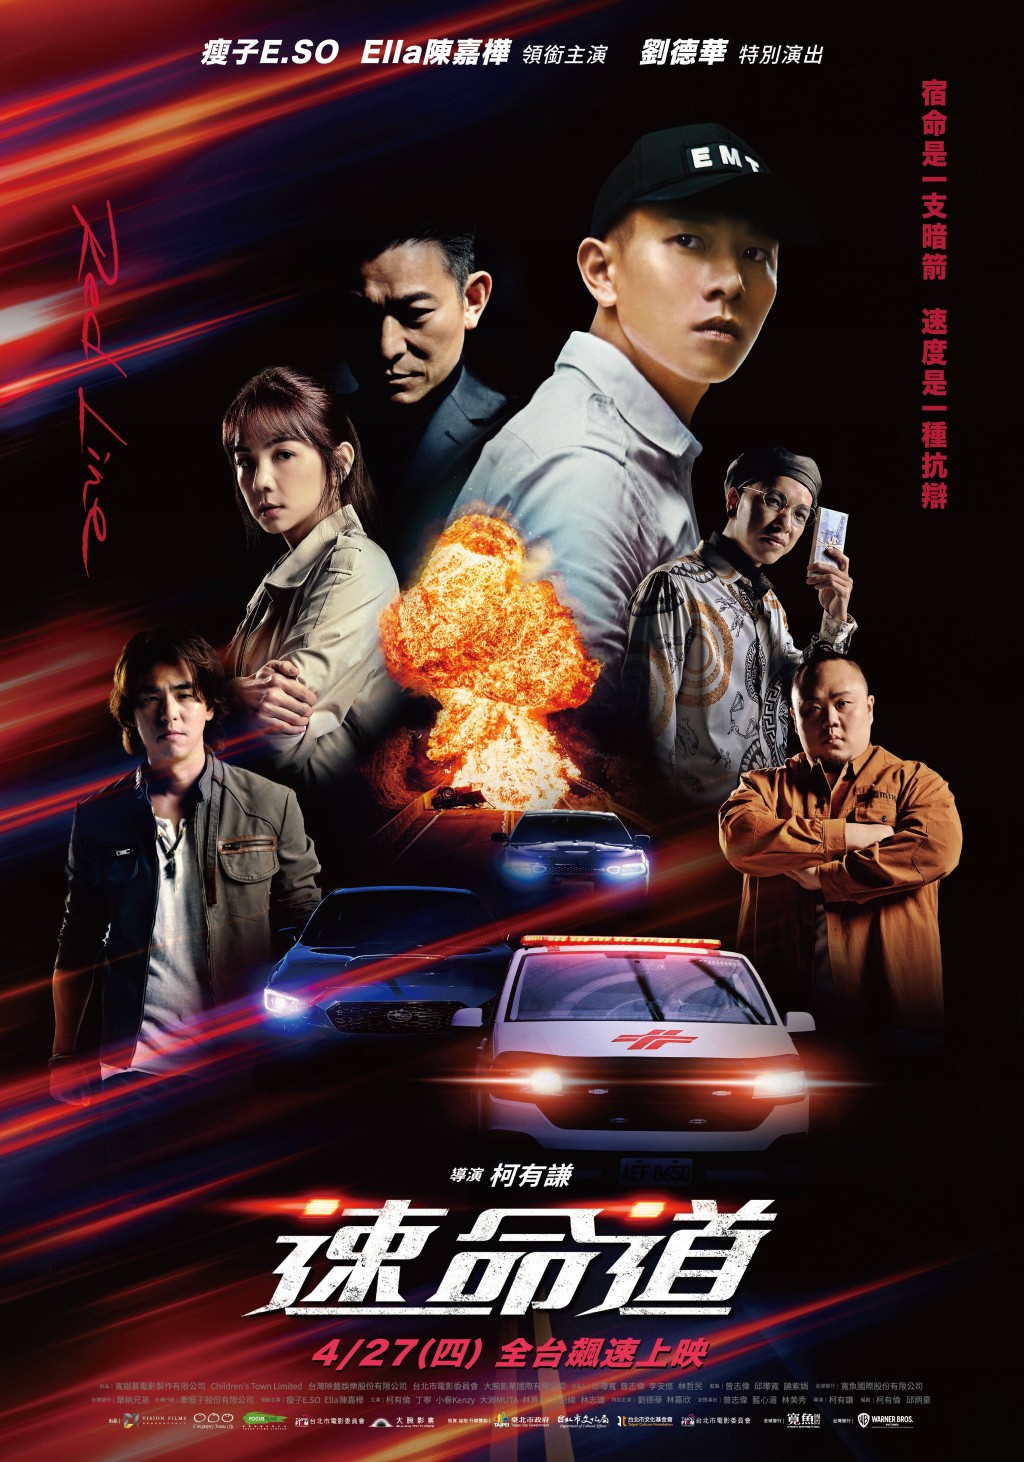 柯有谦去年以新导演身份拍摄台湾电影《速命道》。